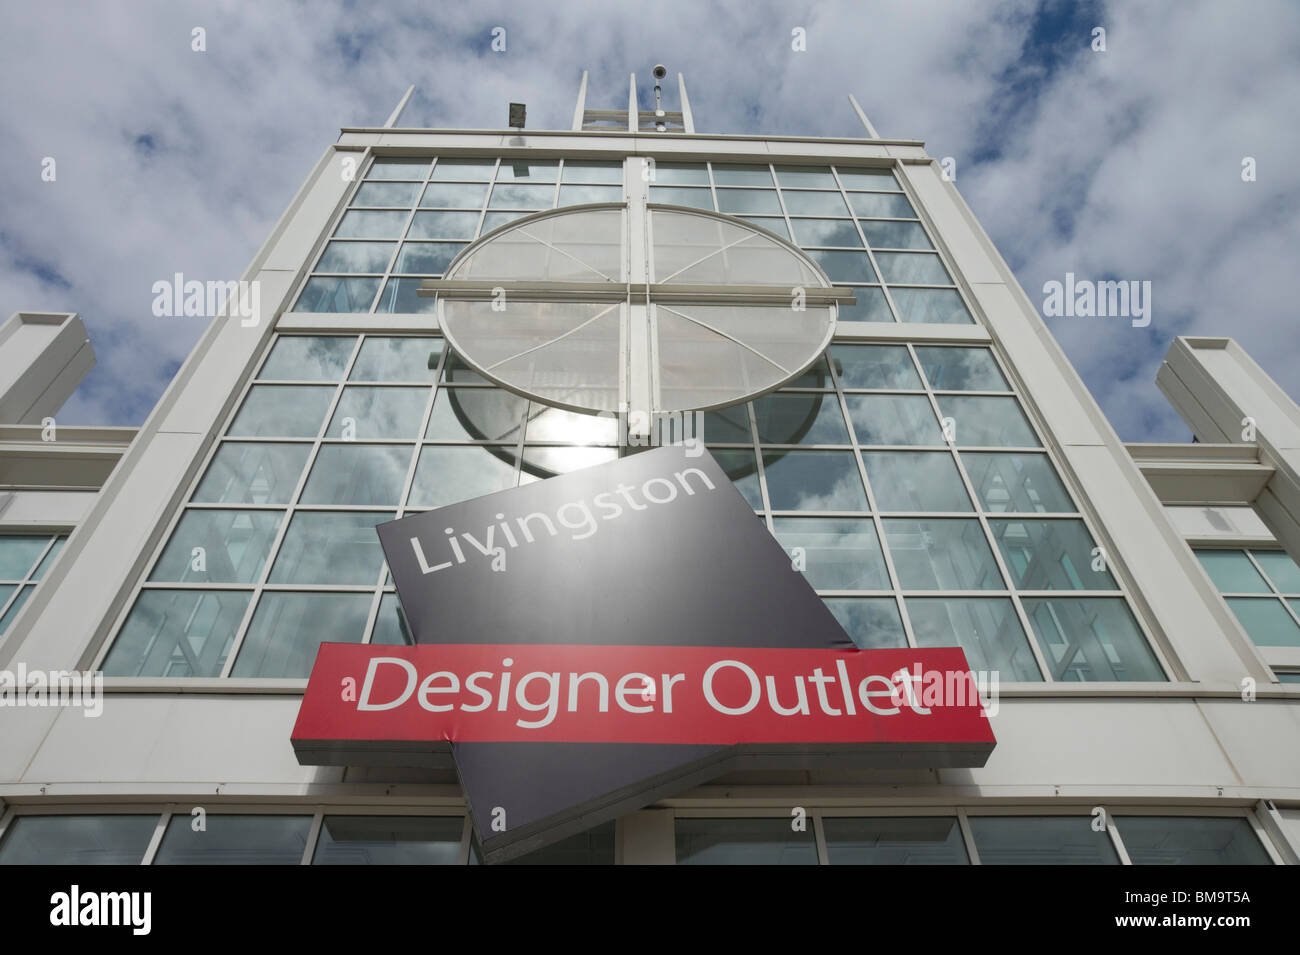 Livingston Designer Outlet Shopping Mall Schottland Stockfoto